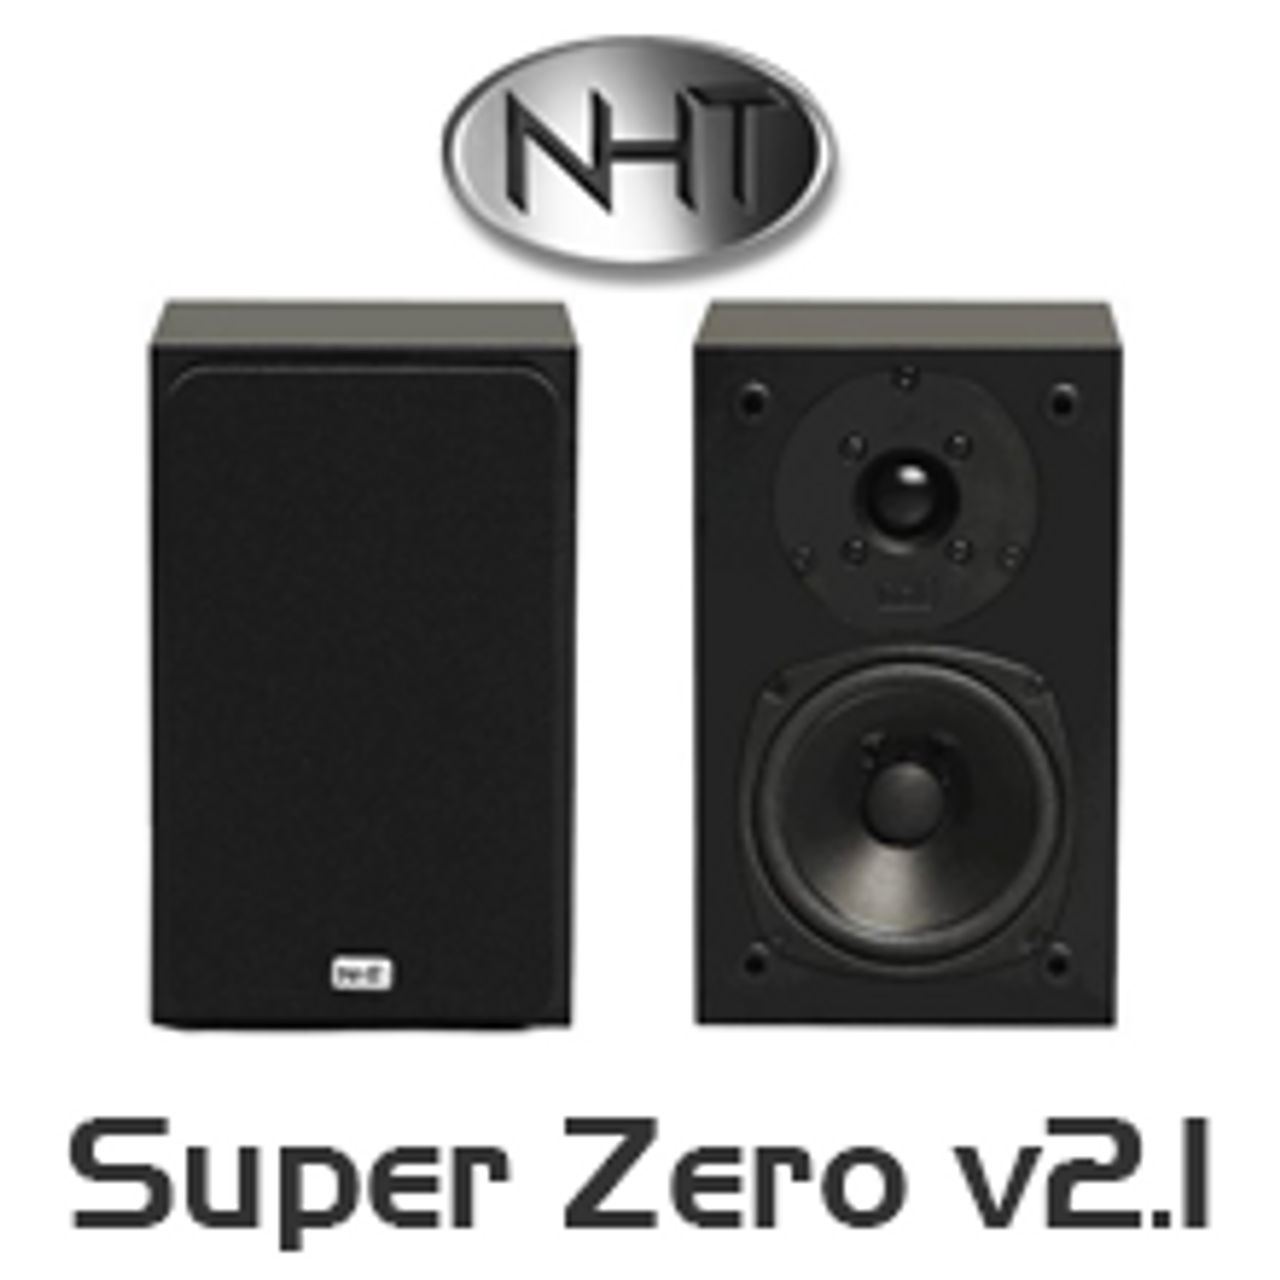 Nht Super Zero V2 1 Bookshelf Speakers Pair Av Australia Online